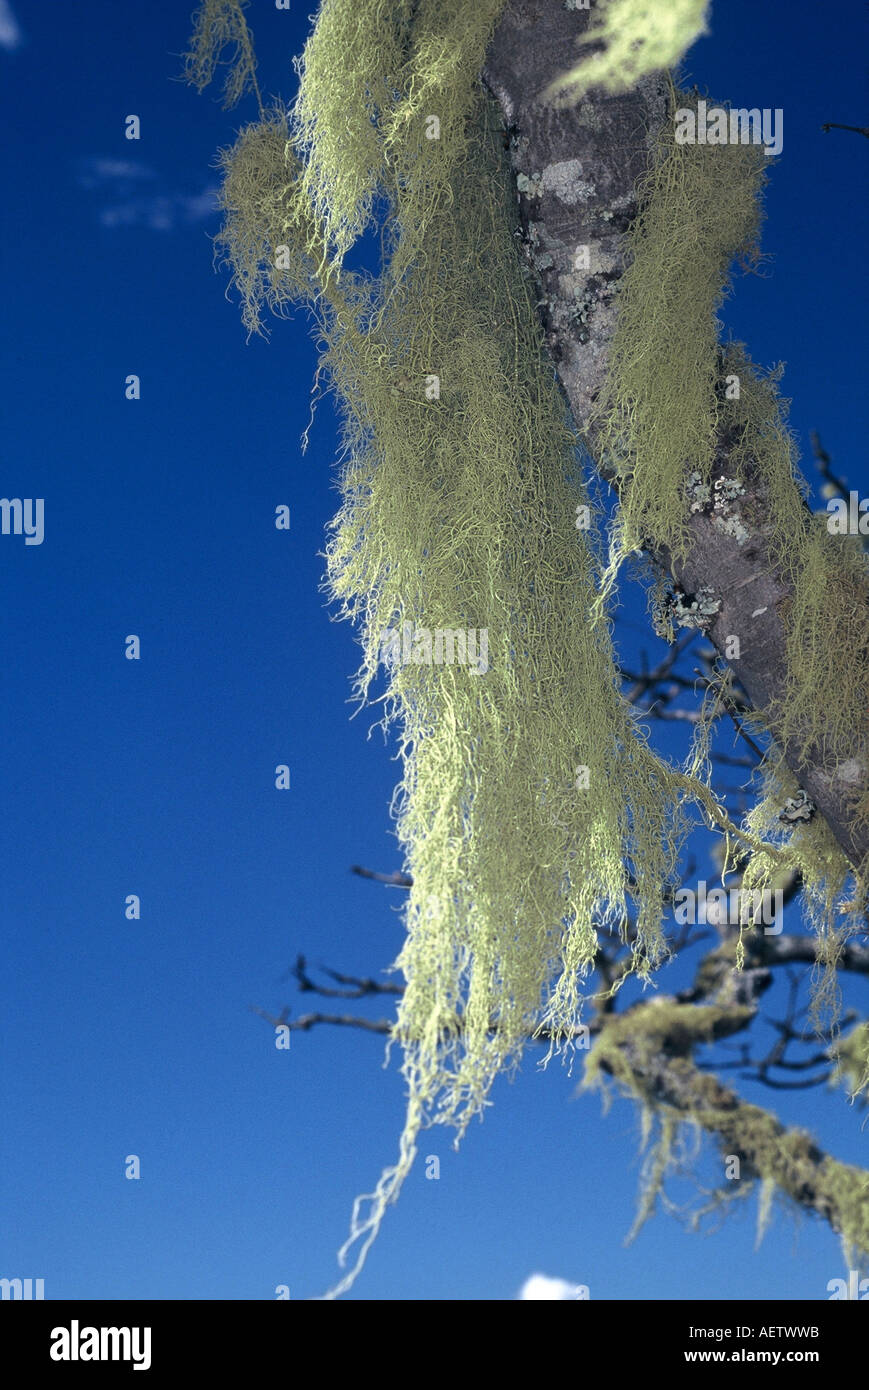 Aerial lichen in Msasa trees Stock Photo